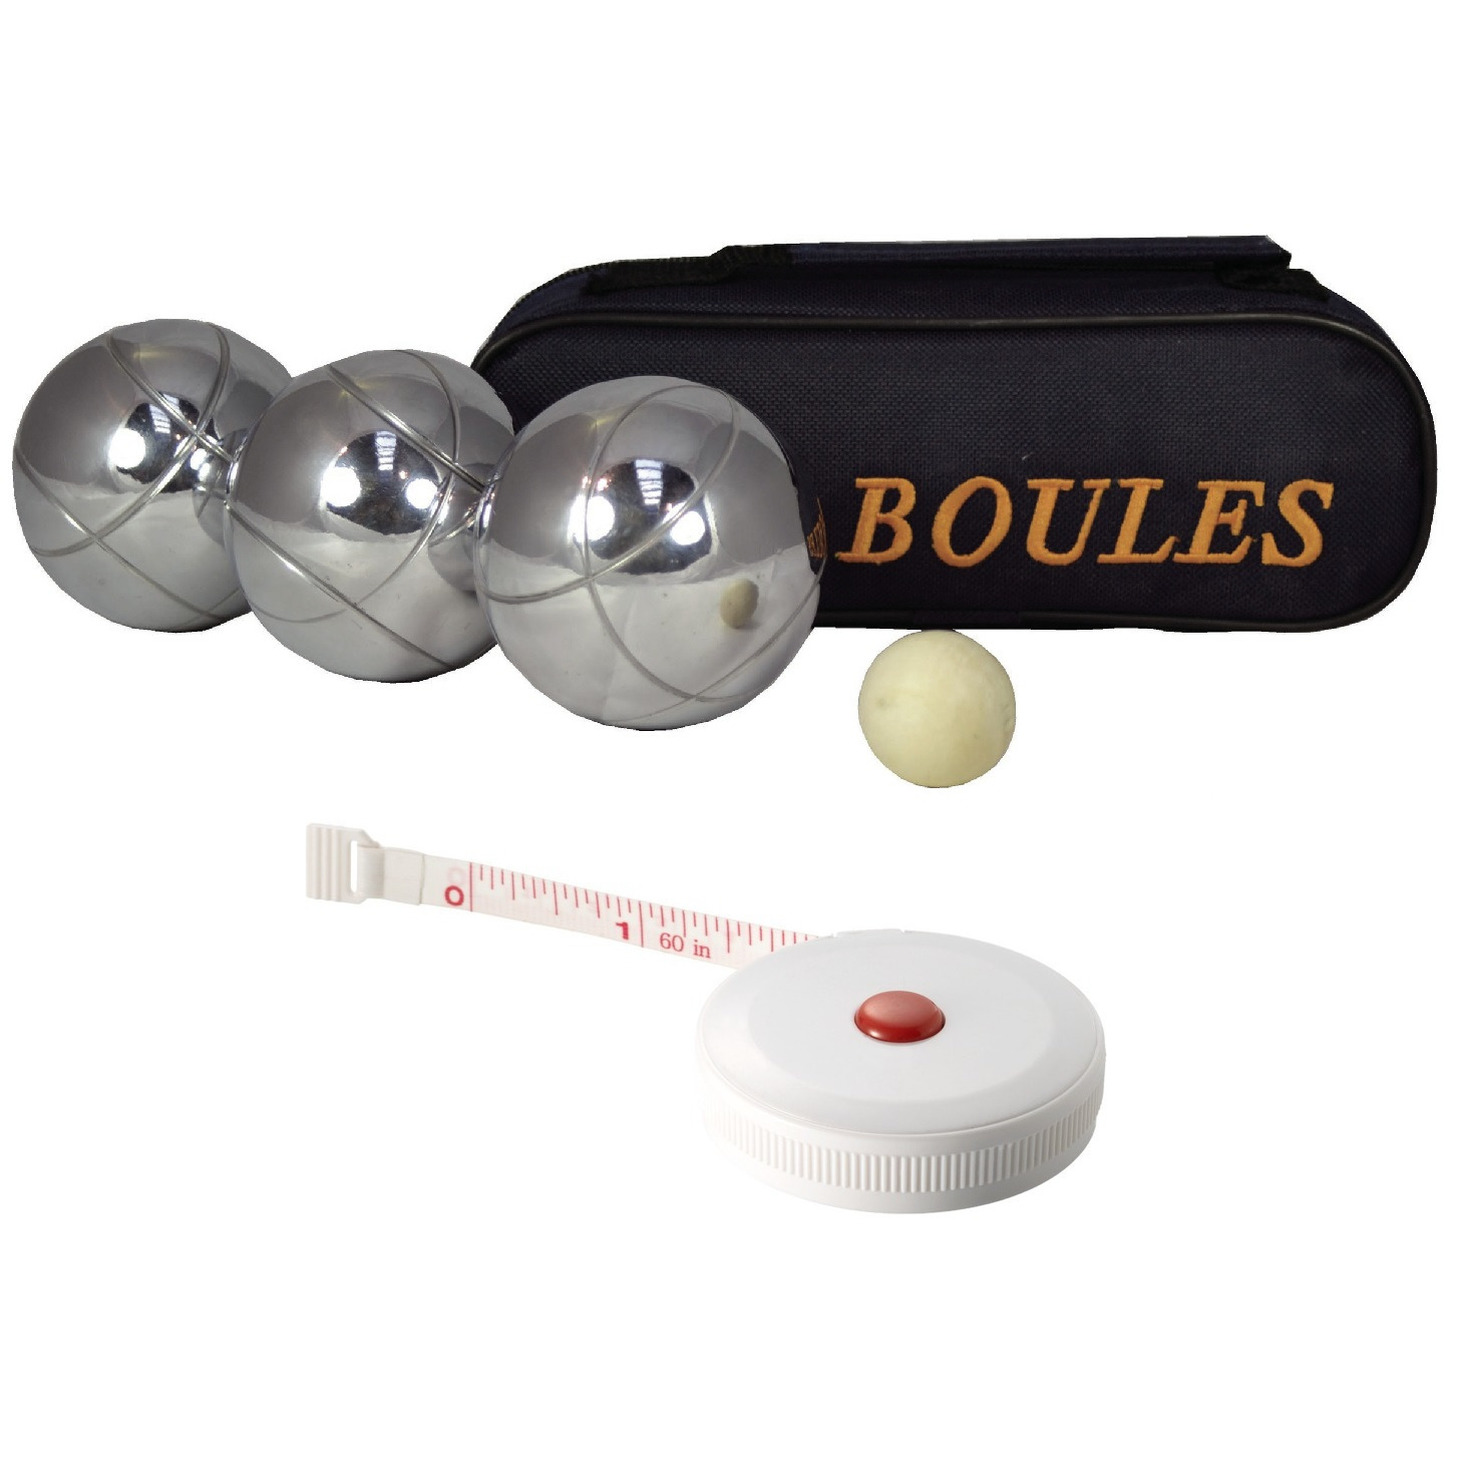 Kaatsbal ballen gooien jeu de boules set in draagtas + compact meetlint-rolmaat 1,5 meter